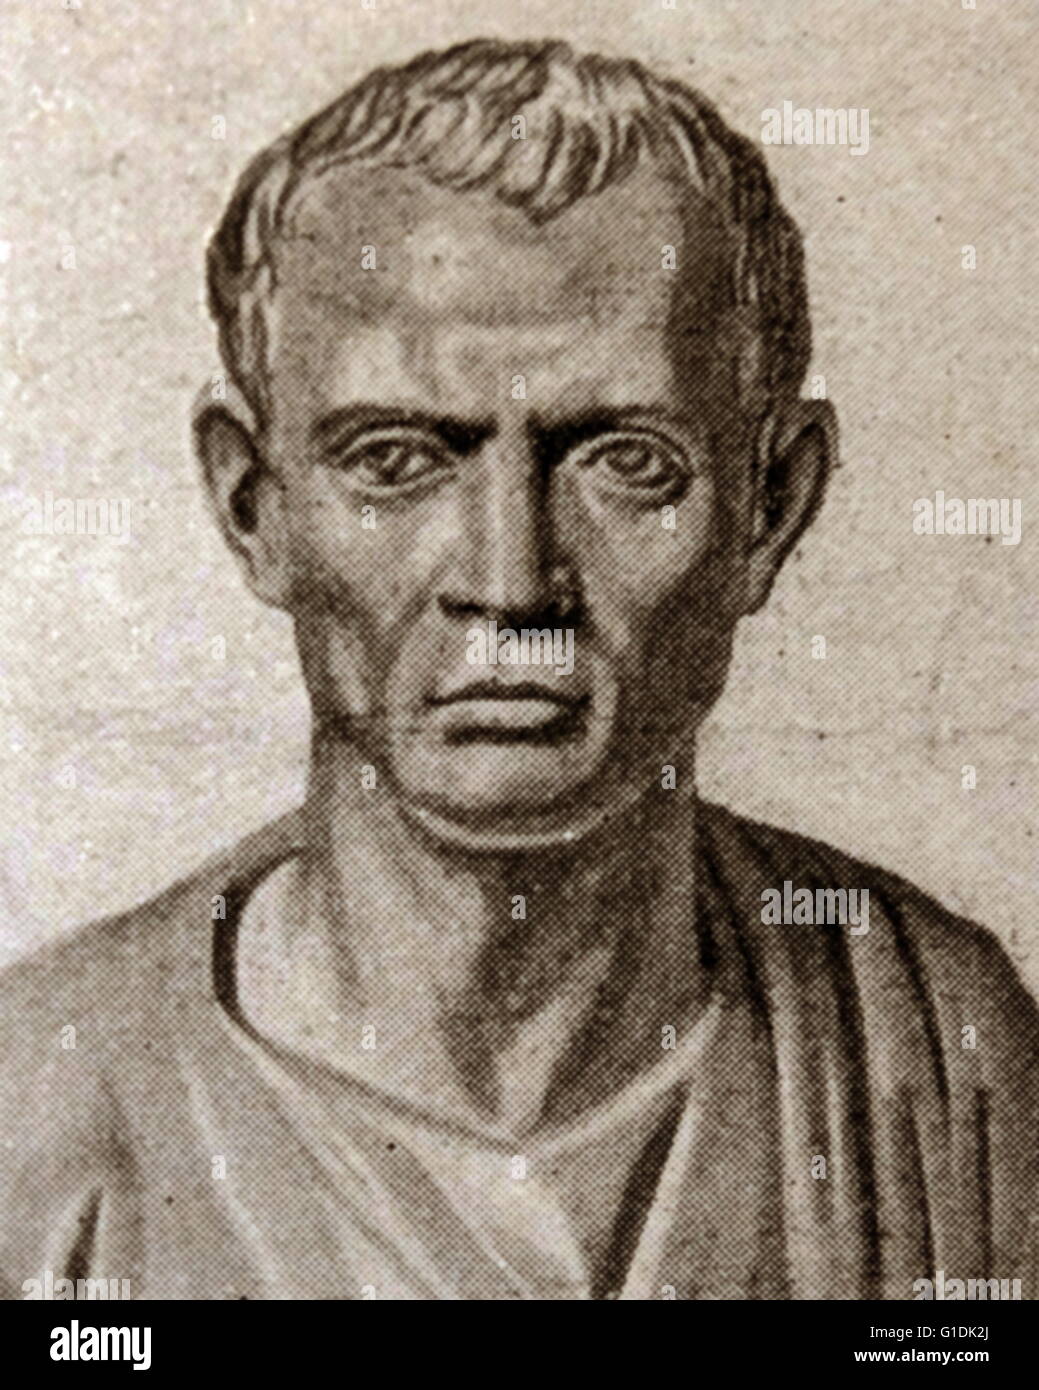 Büste des römischen Philosophen Marcus Tullius Cicero (107-43 v. Chr.), Politiker, Rechtsanwalt, Redner, politischer Theoretiker, Konsul und Verfassungsrechtler. Stockfoto